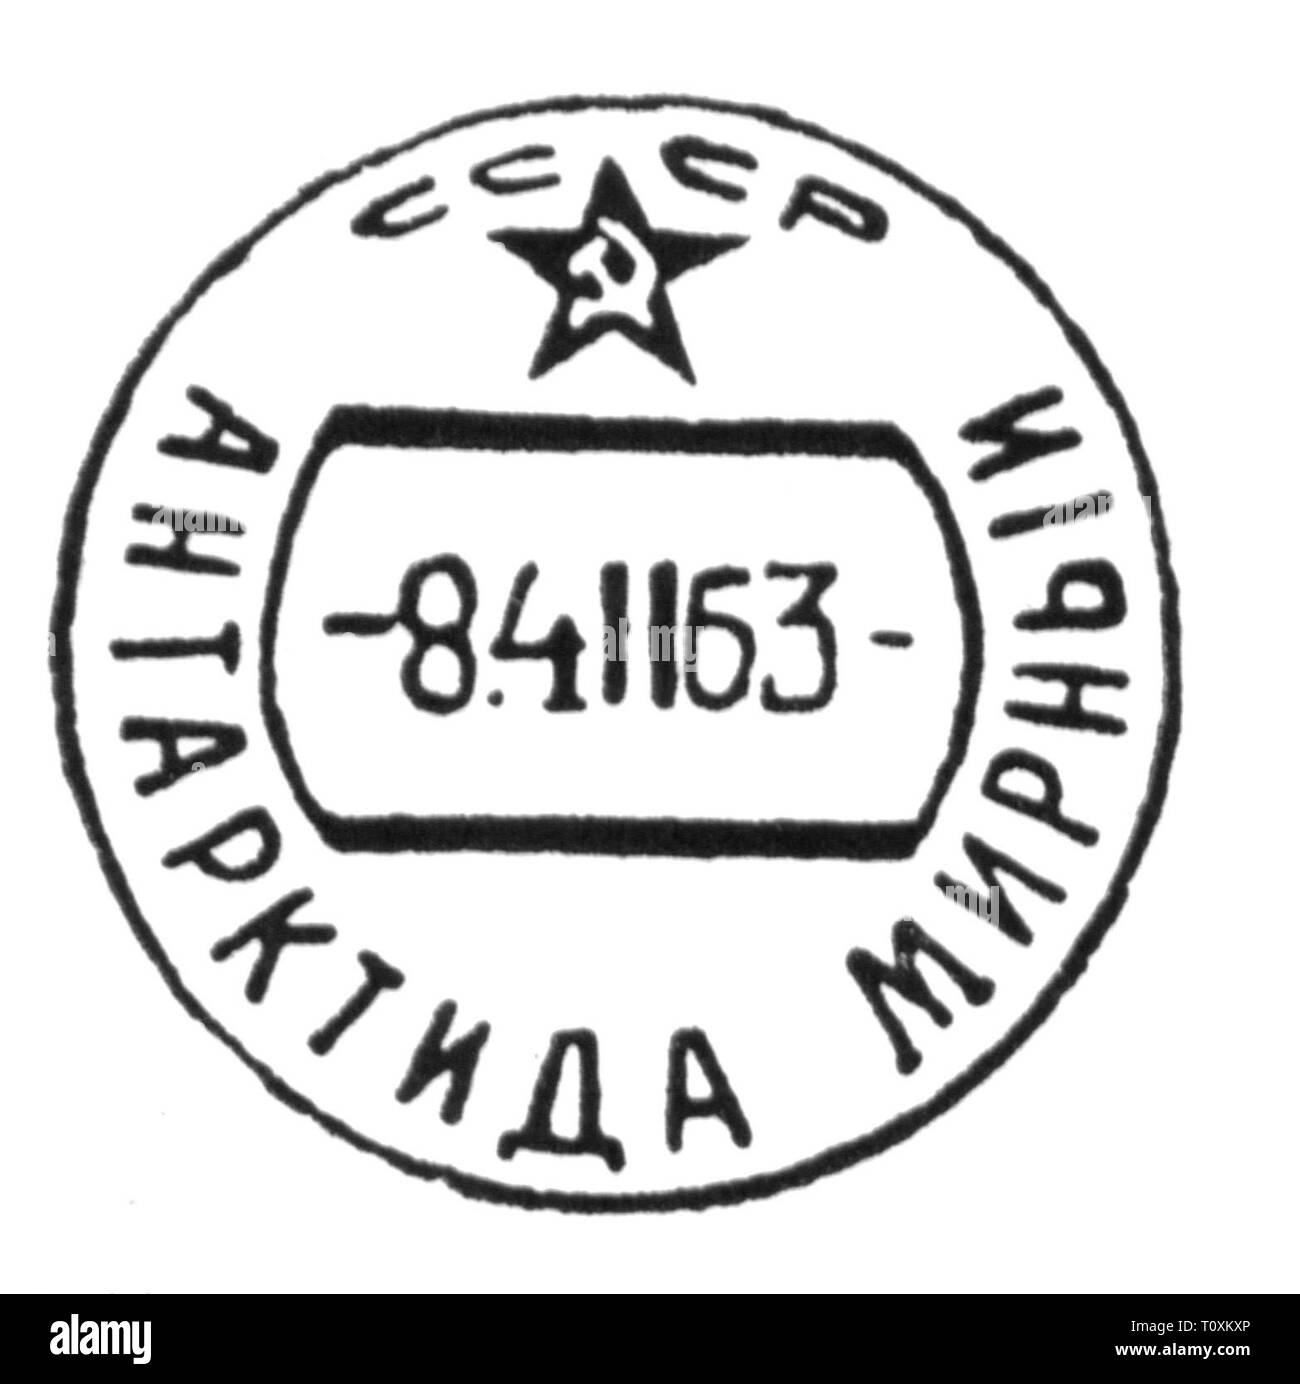 Mail, marques postales, Russie, cachet de la station antarctique soviétique Mirny, 4.2.1963, l'artiste n'a pas d'auteur pour être effacé Banque D'Images